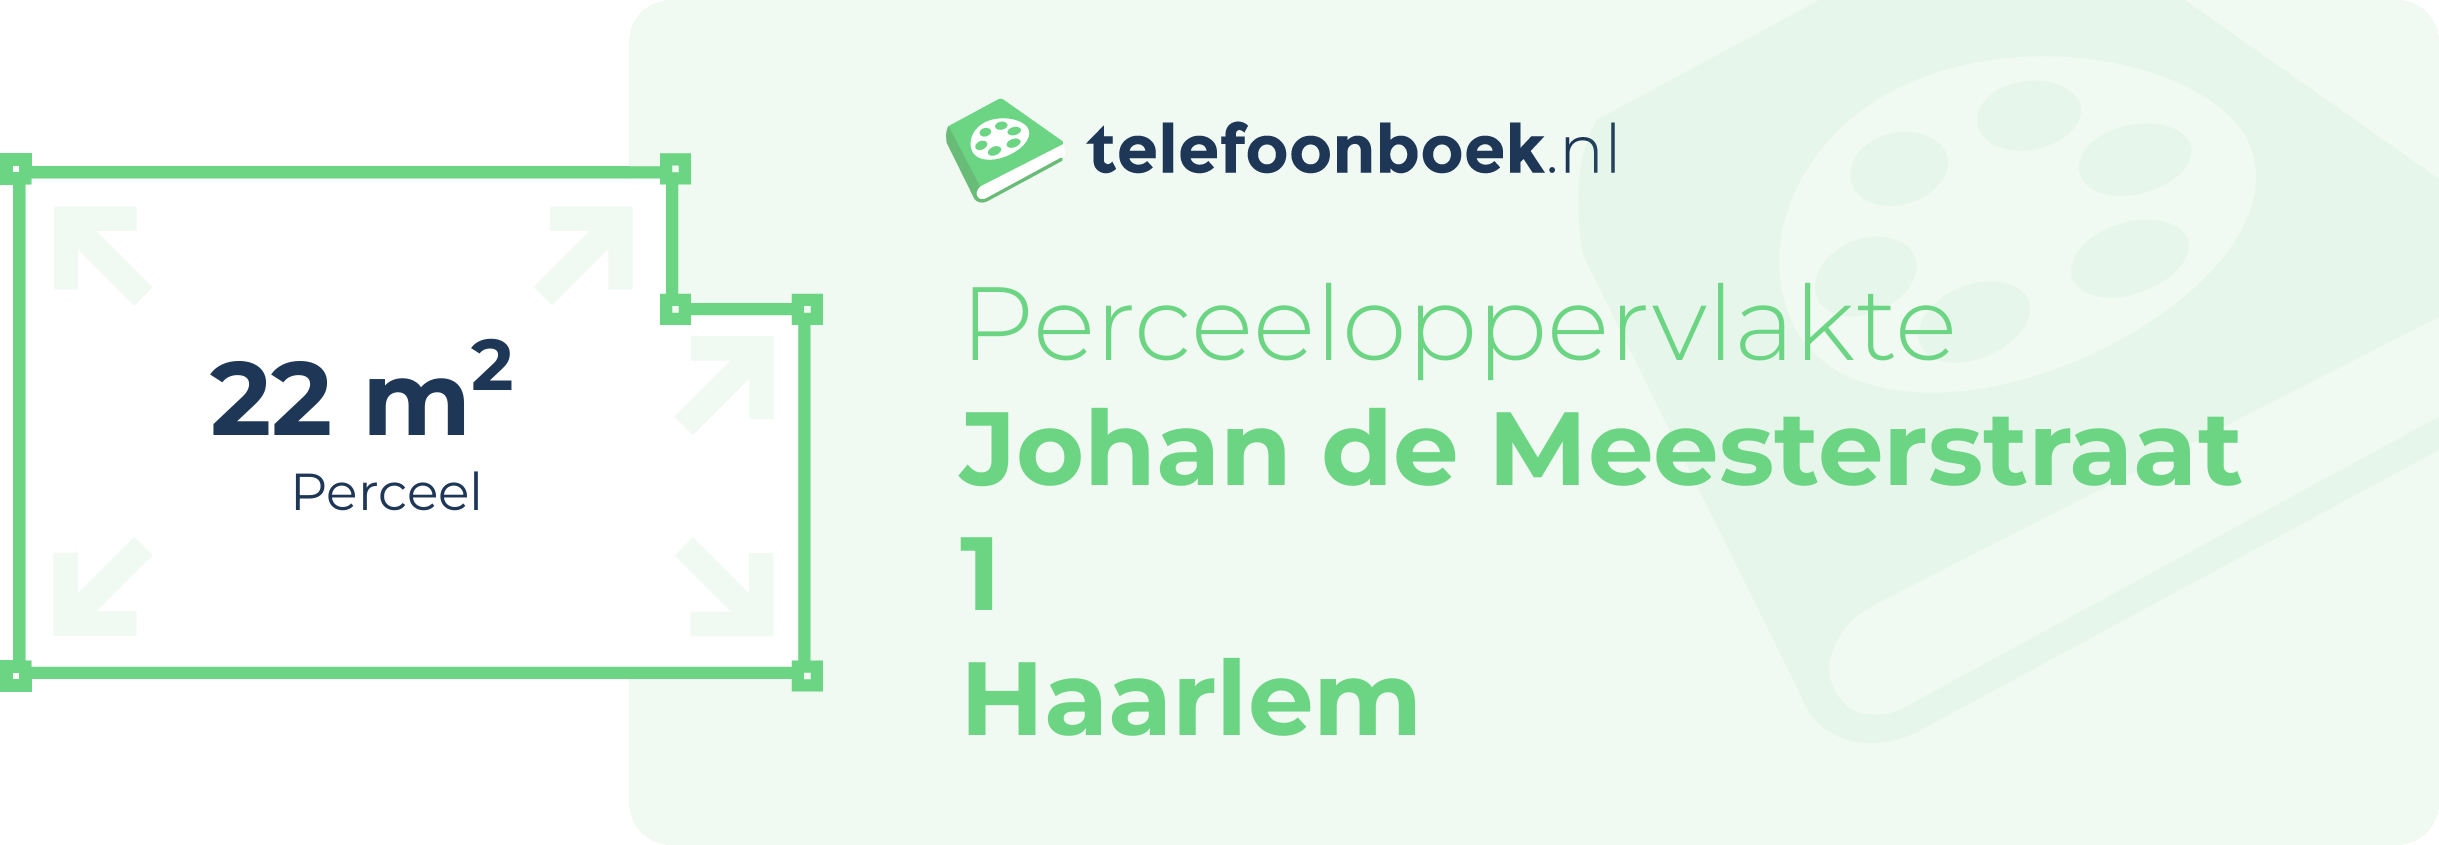 Perceeloppervlakte Johan De Meesterstraat 1 Haarlem